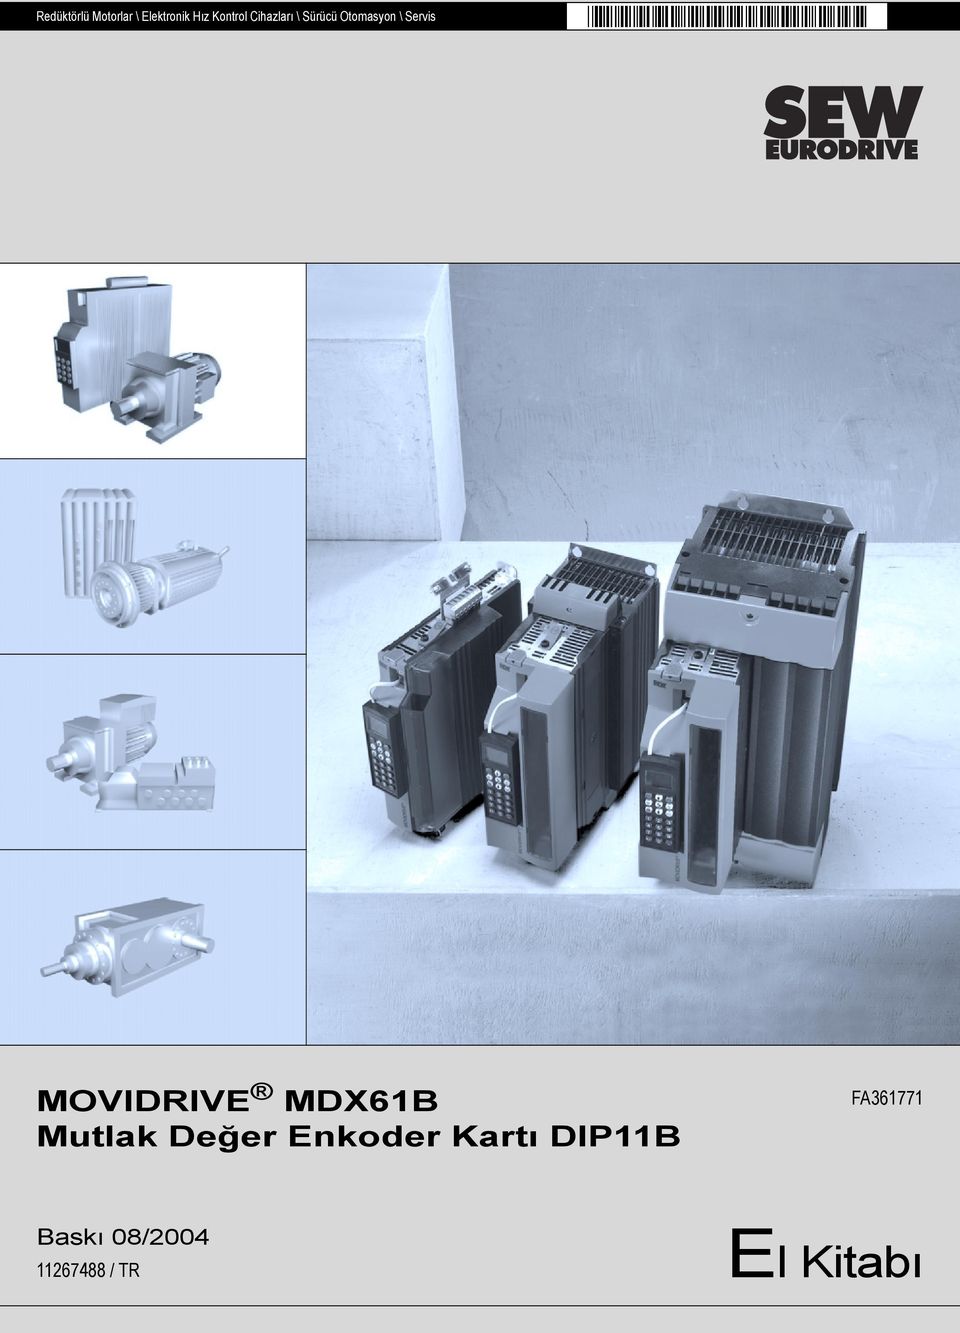 MOVIDRIVE MDX61B Mutlak Değer Enkoder Kartõ